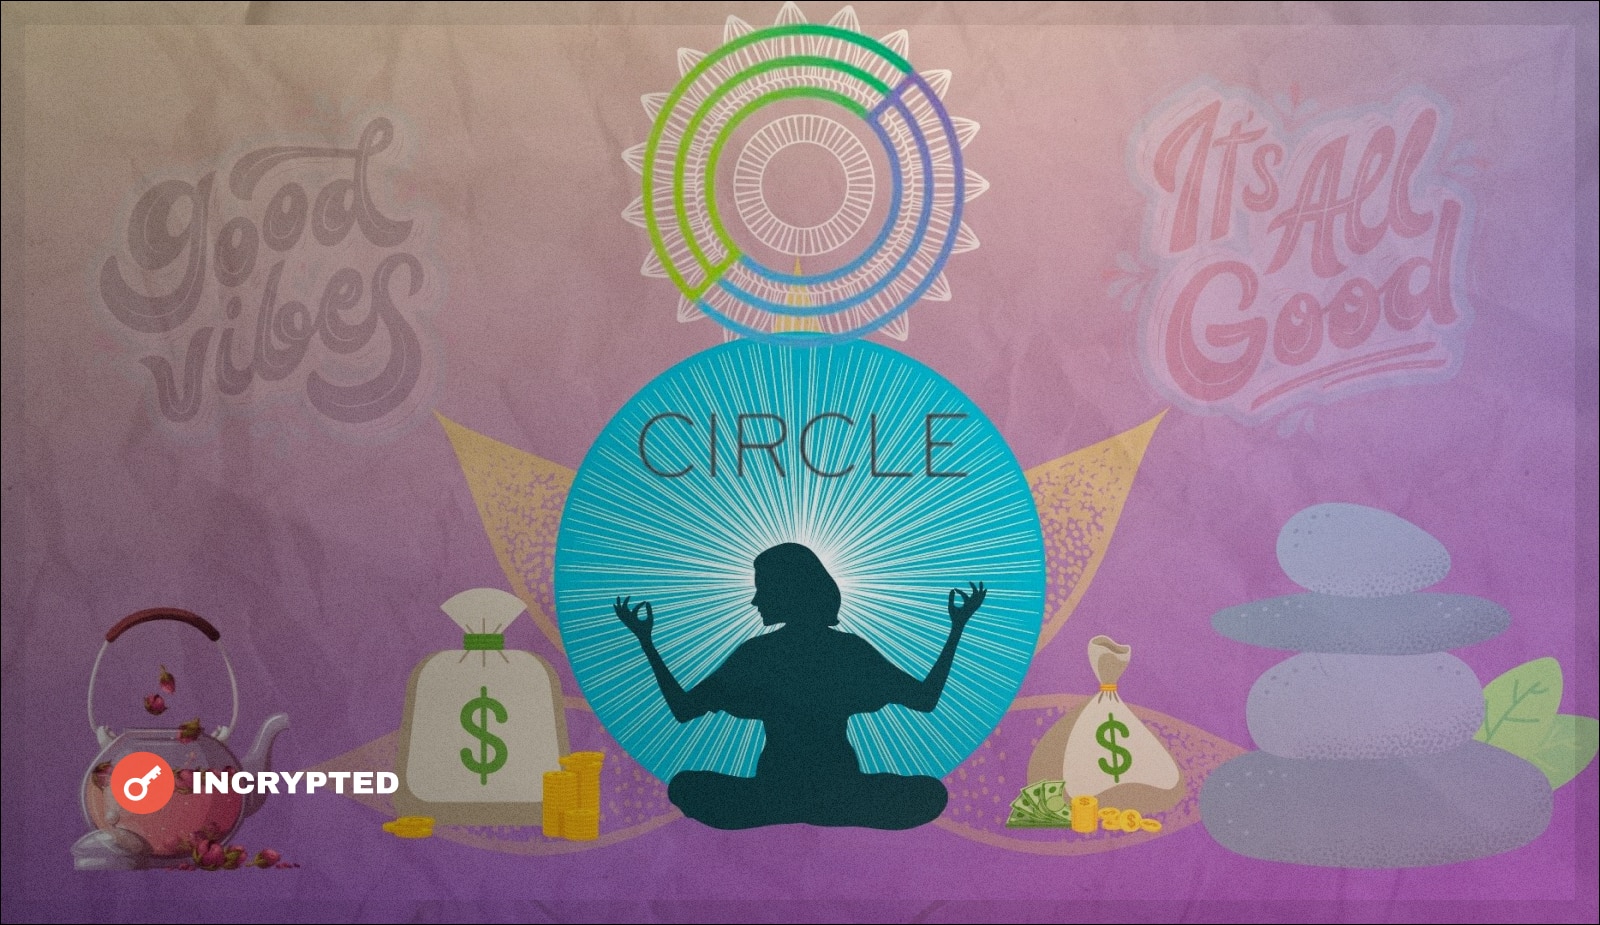 Джереми Аллер: “Circle находится в лучшем финансовом состоянии, чем когда-либо”. Заглавный коллаж новости.